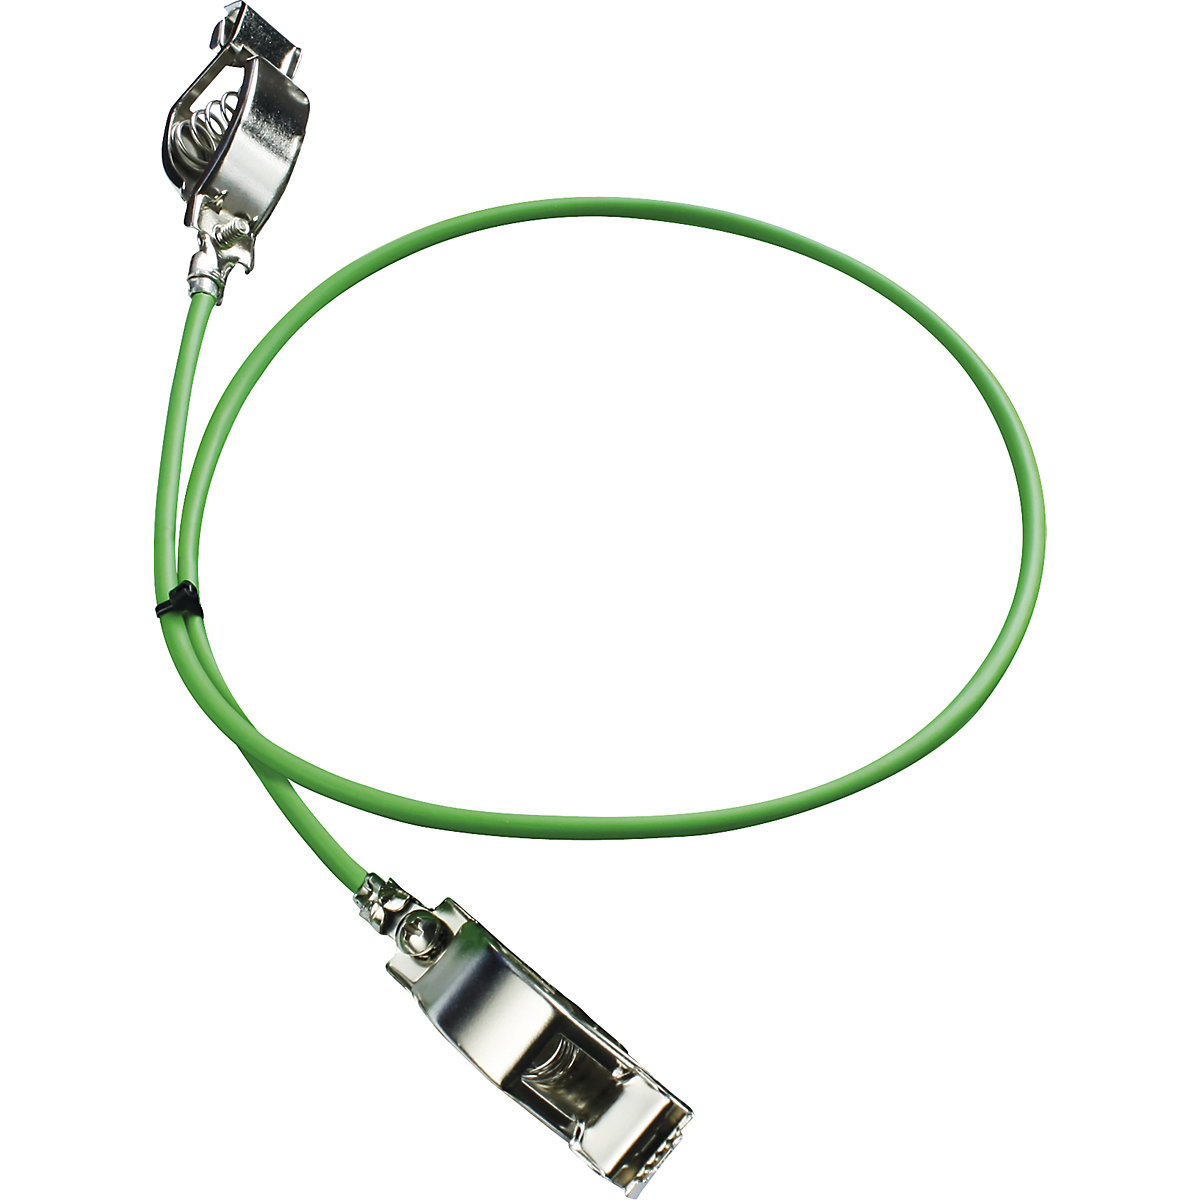 Uzemňovací kabel – Jessberger, jako vyrovnání potenciálů, bal.j. 5 ks, délka 1 m-1